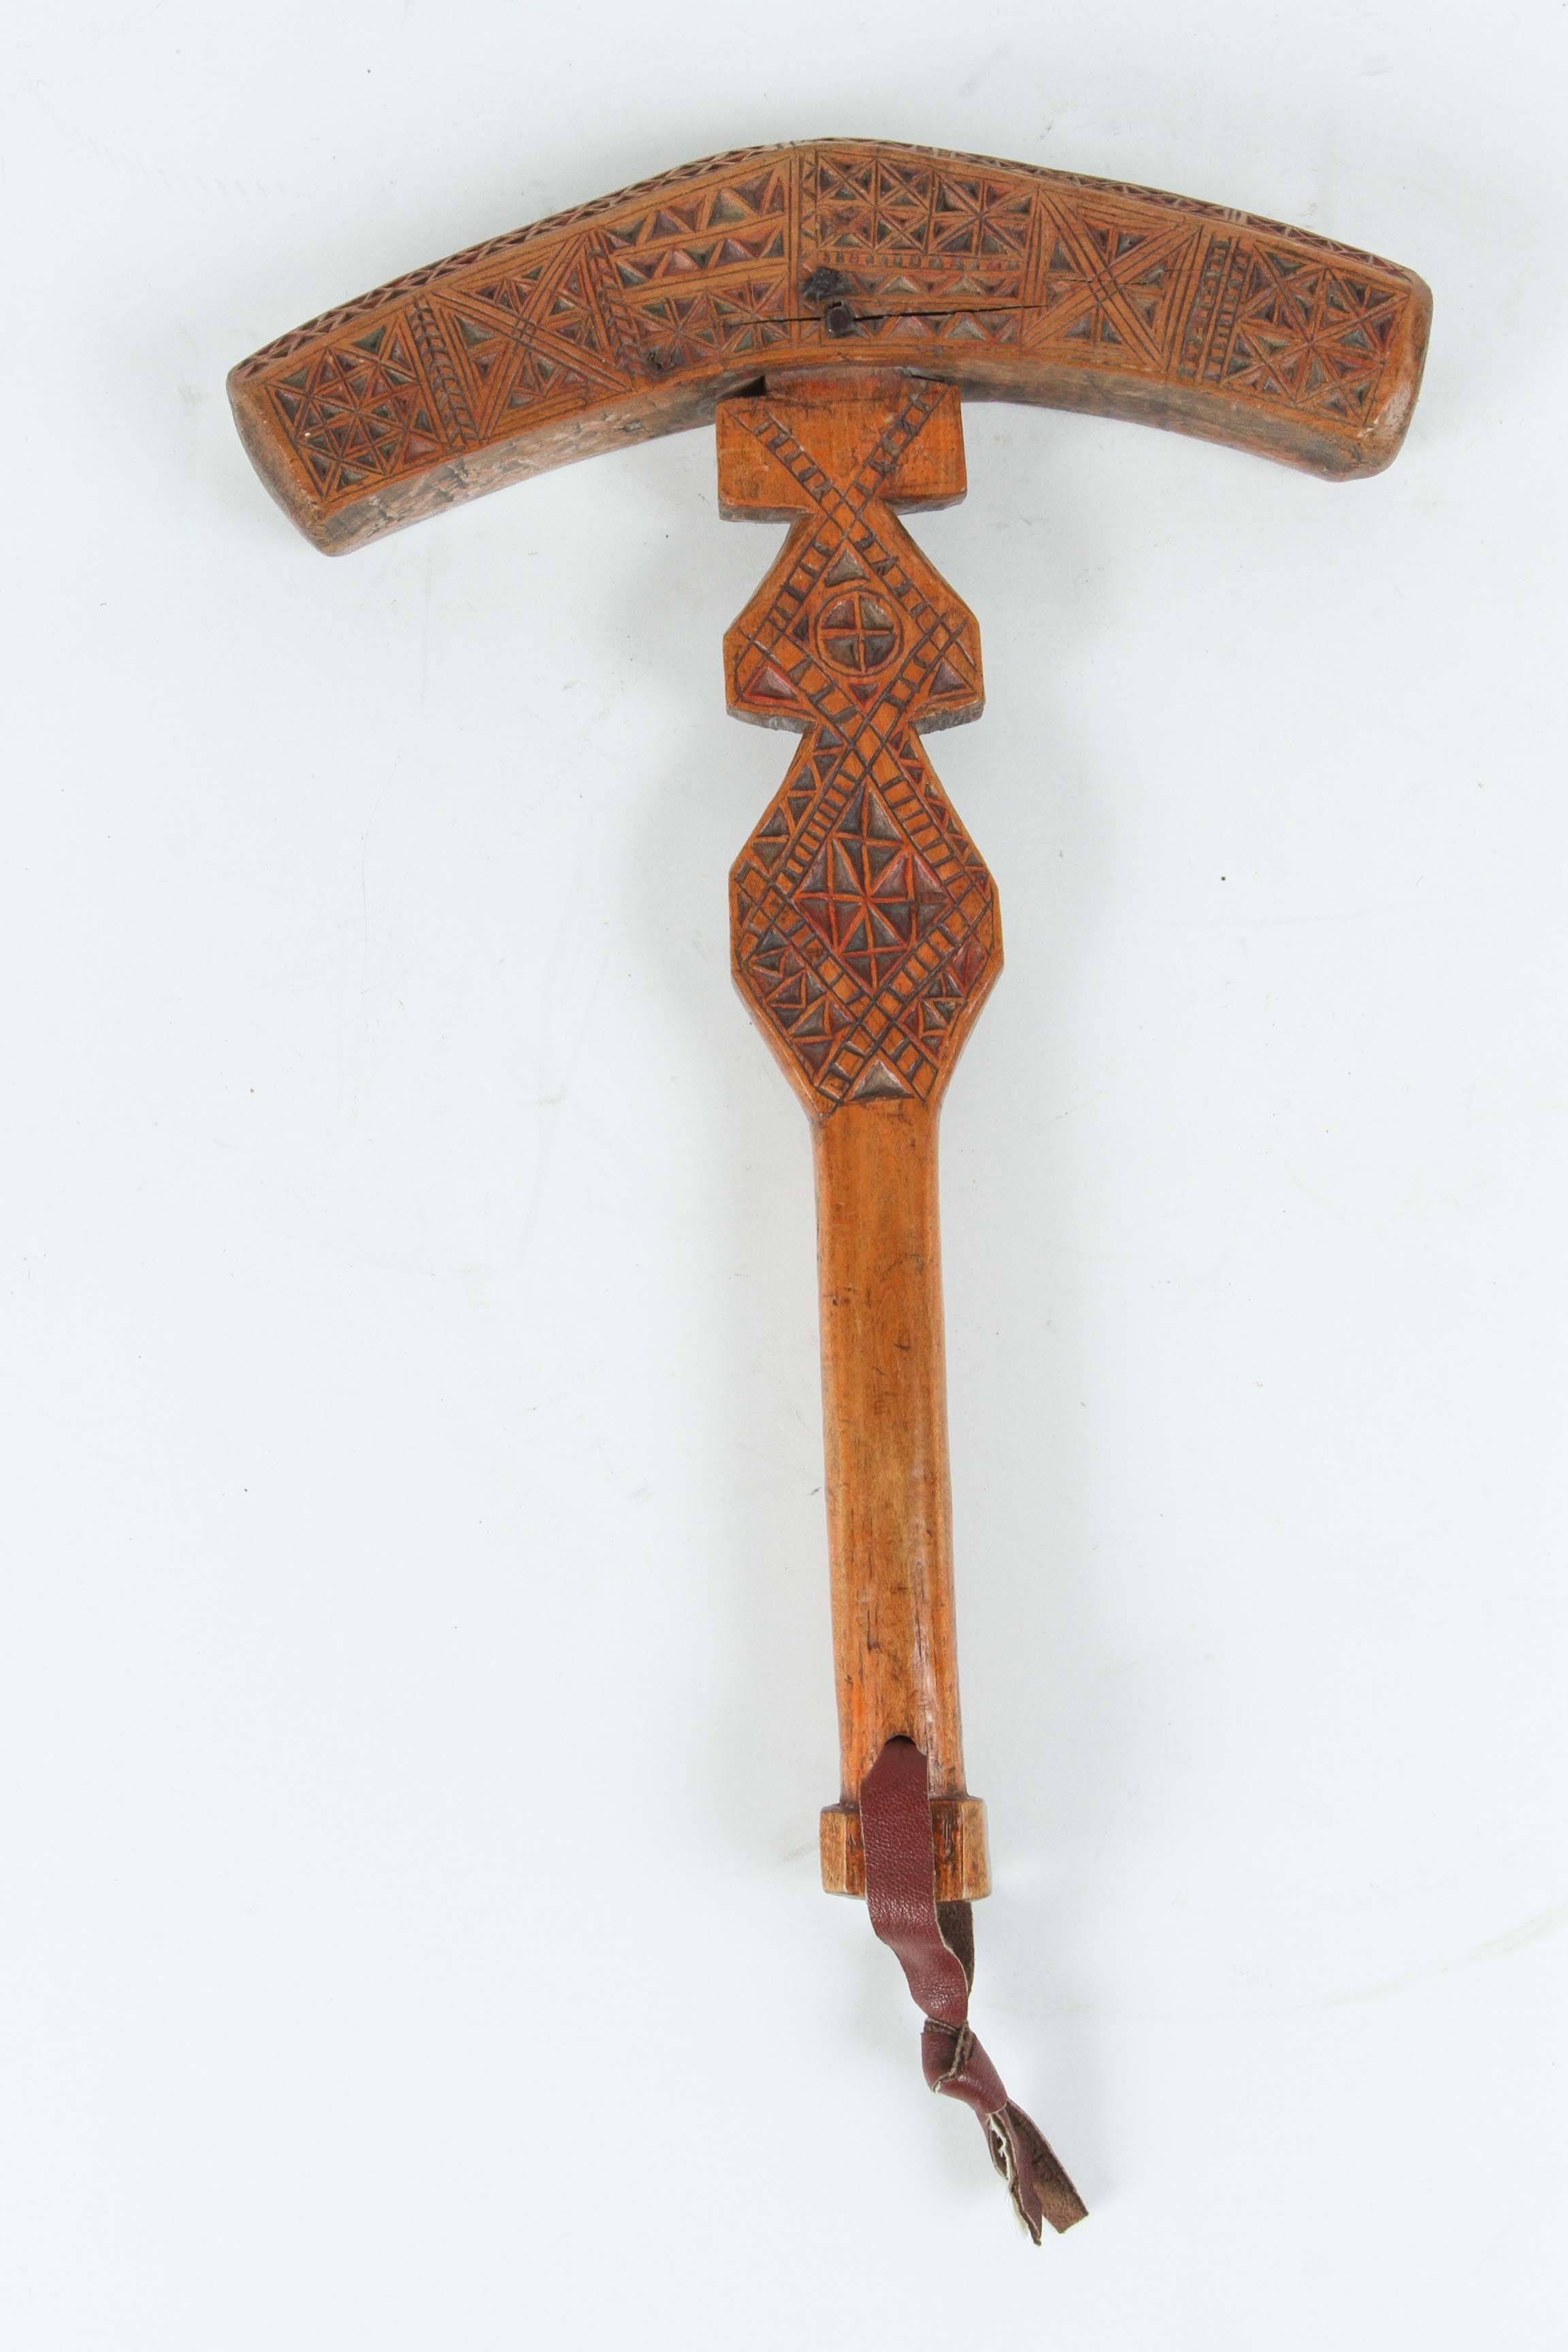 Marokkanischer Berberstamm-Zuckerhammer aus Holz.
Dieses von den Berberfrauen Marokkos handgefertigte Instrument aus handgeschnitztem Holz mit Stammesmotiven ist ein Zuckerhammer. In Marokko wurde der Zucker in Blockkegeln verkauft, und man brauchte